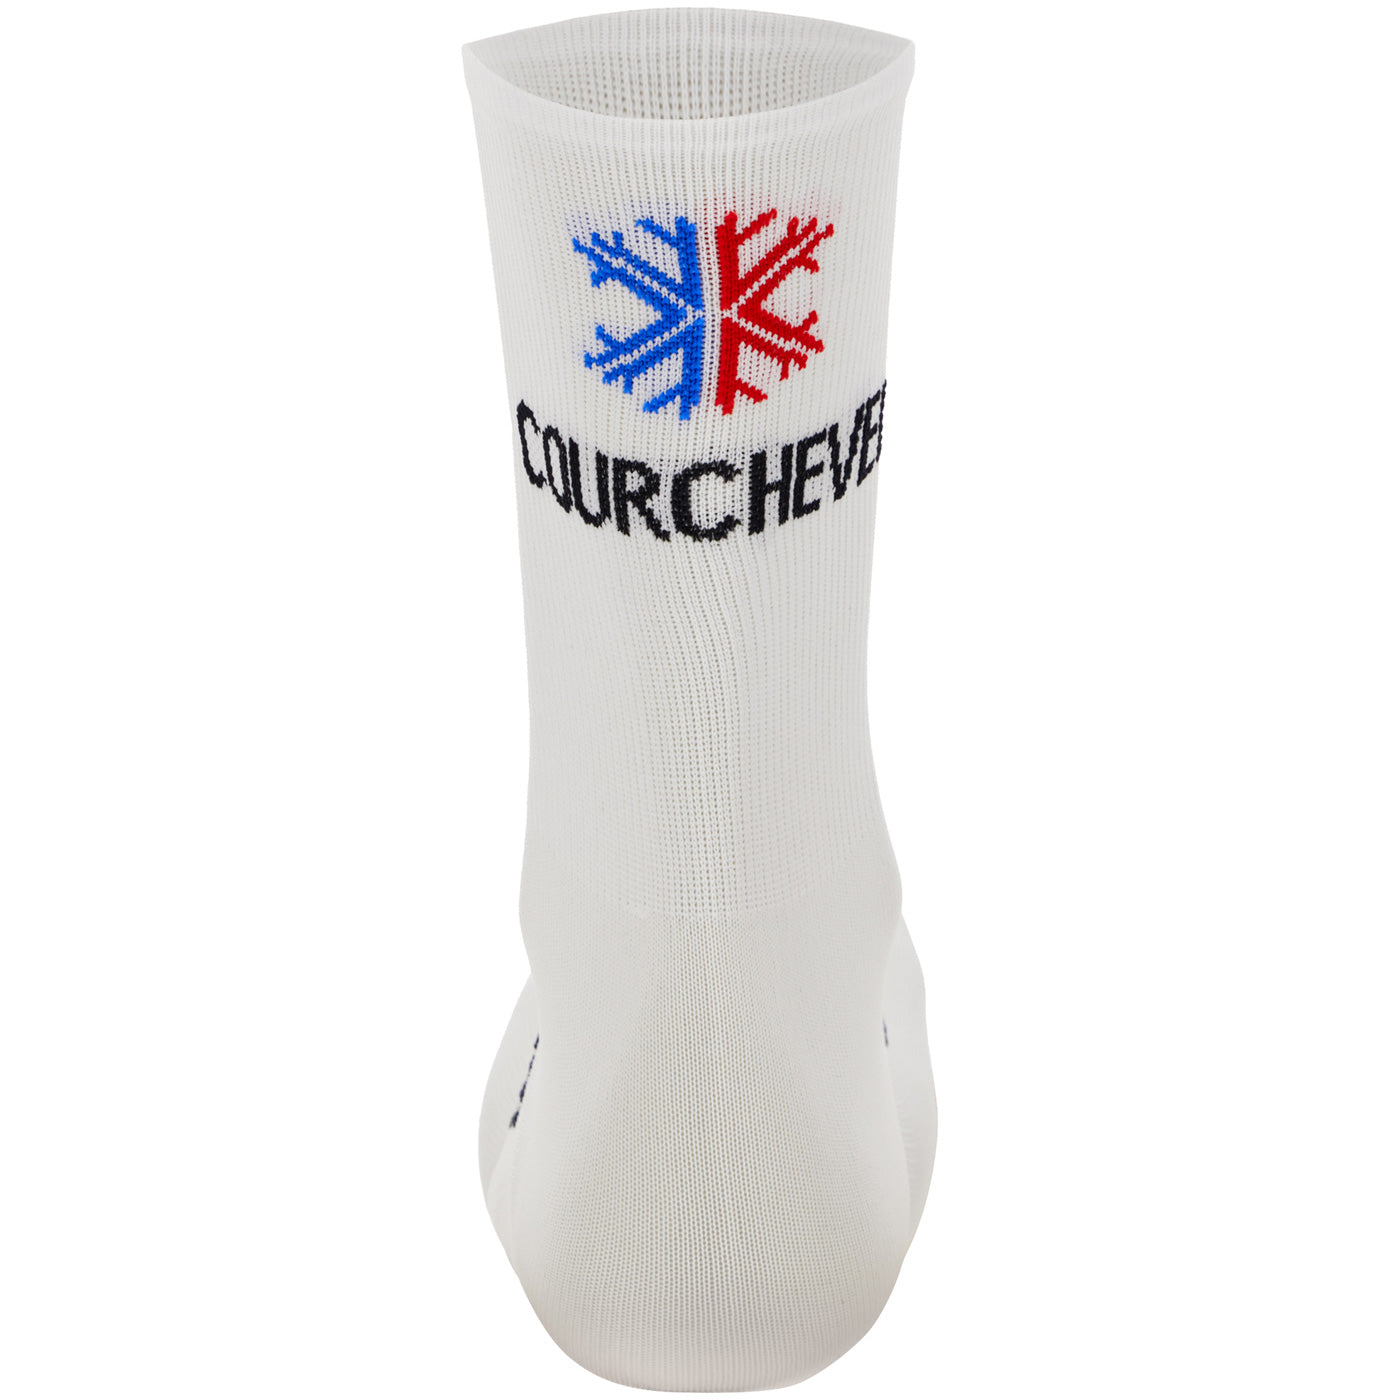 Tour de France socks - Mont Blanc-Courchevel